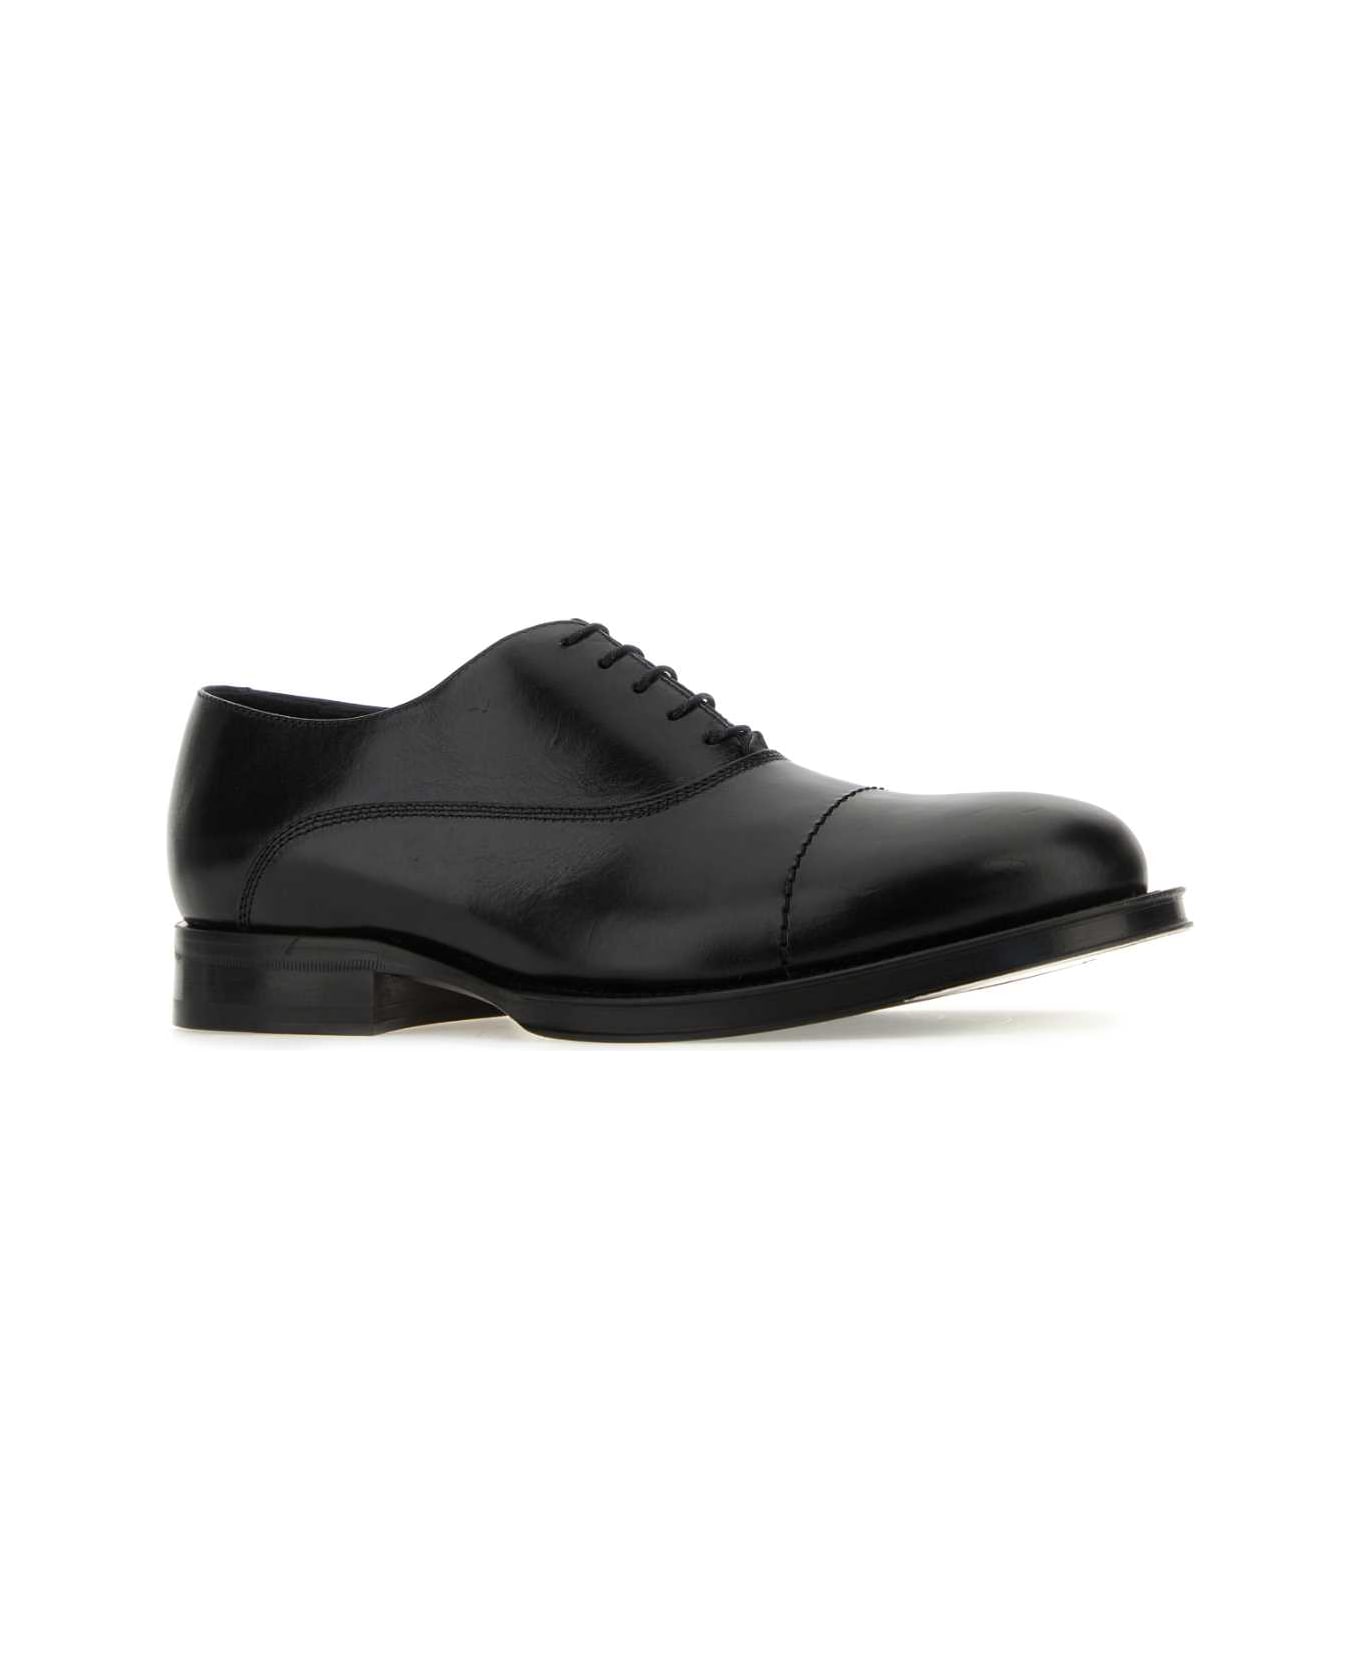 Lanvin Black Leather Richelieu Medley Lace-up Shoes - Black